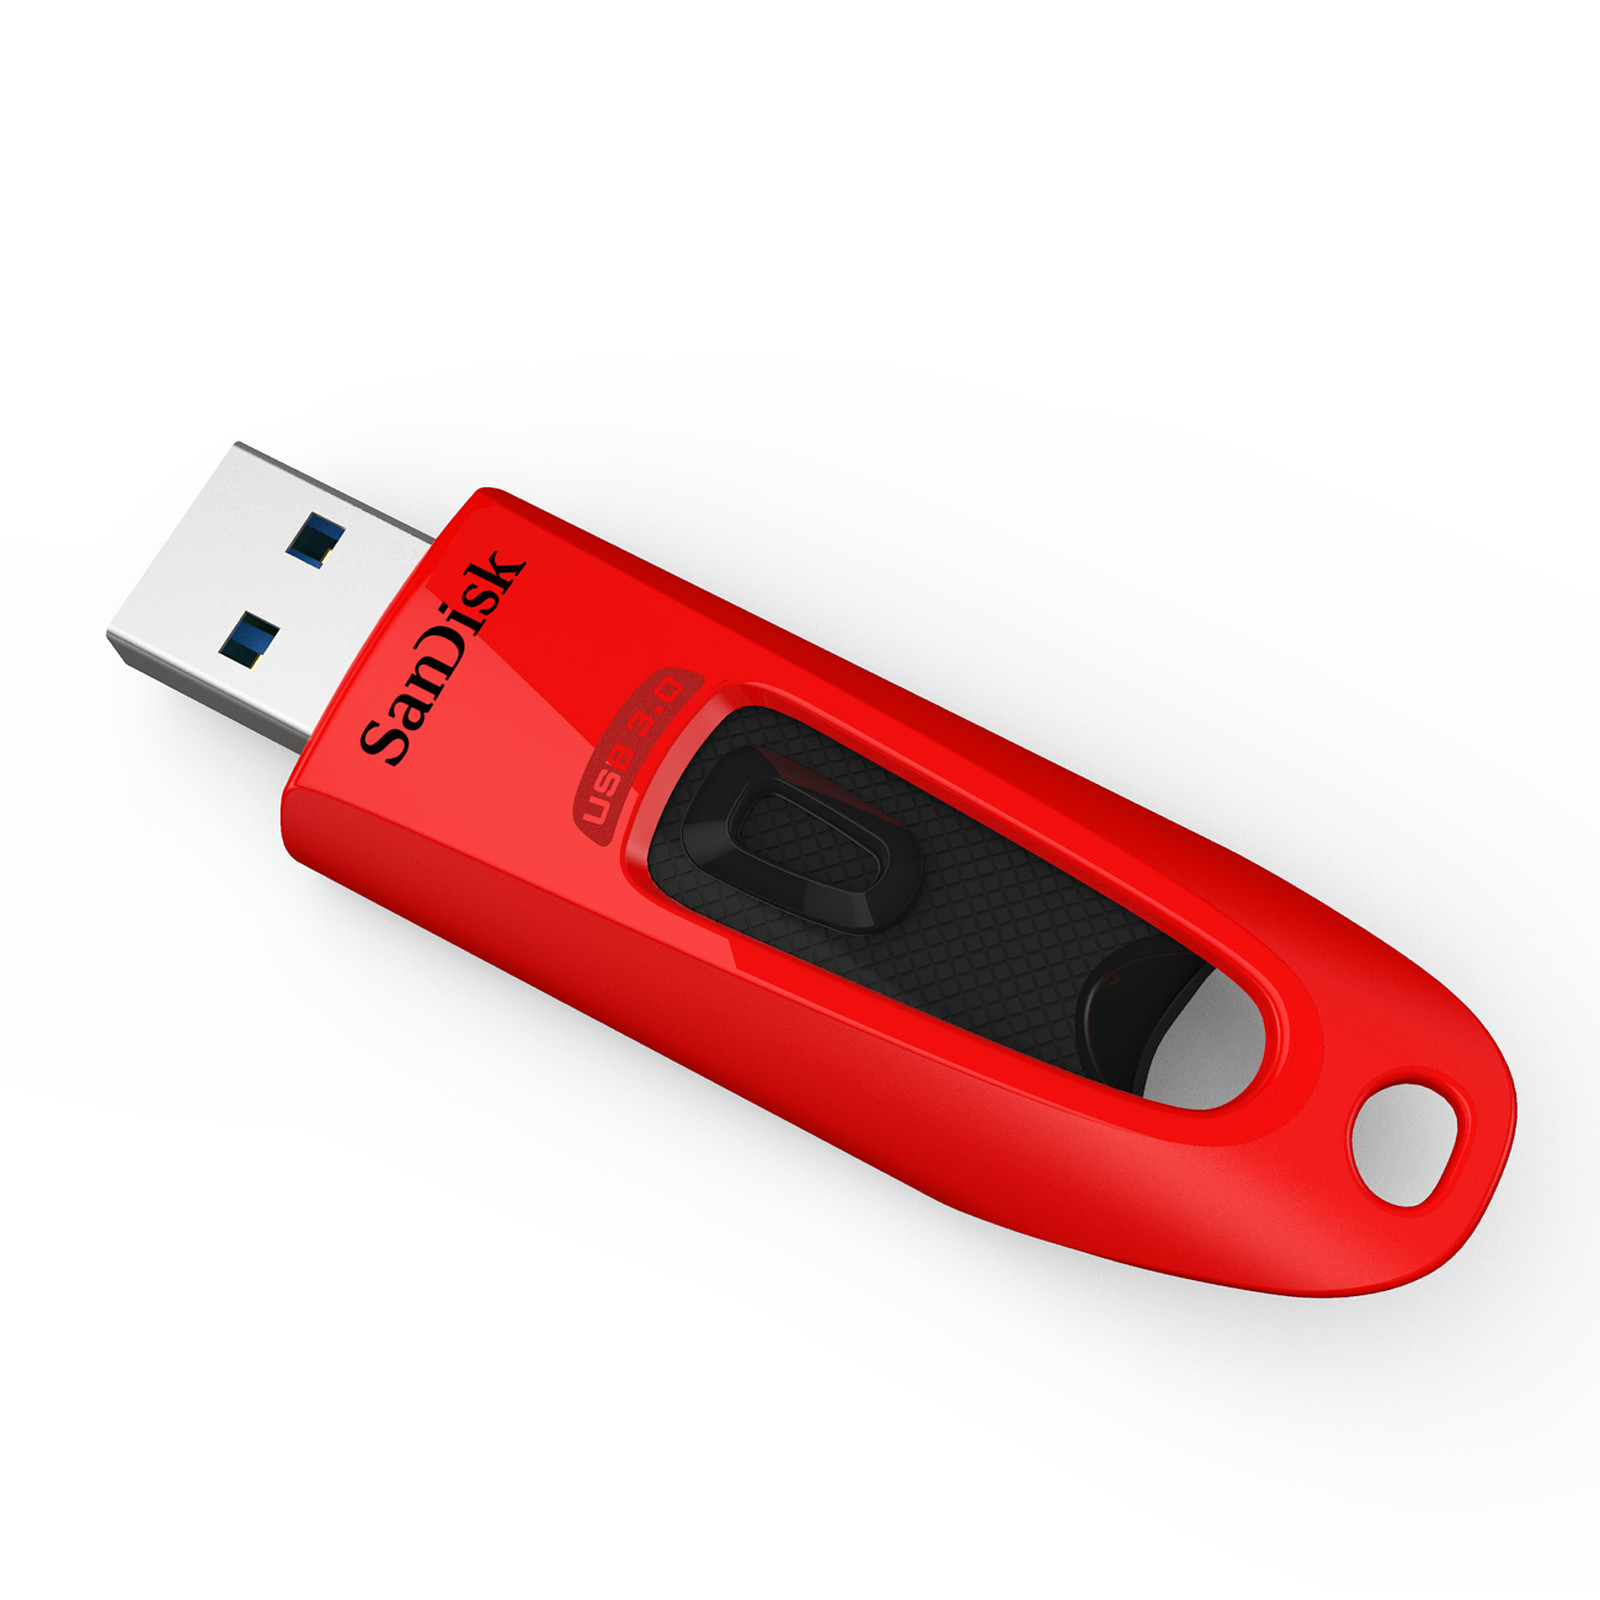 SanDisk Ultra Cle USB 3.0 64 Go Rouge - Cle USB Sandisk